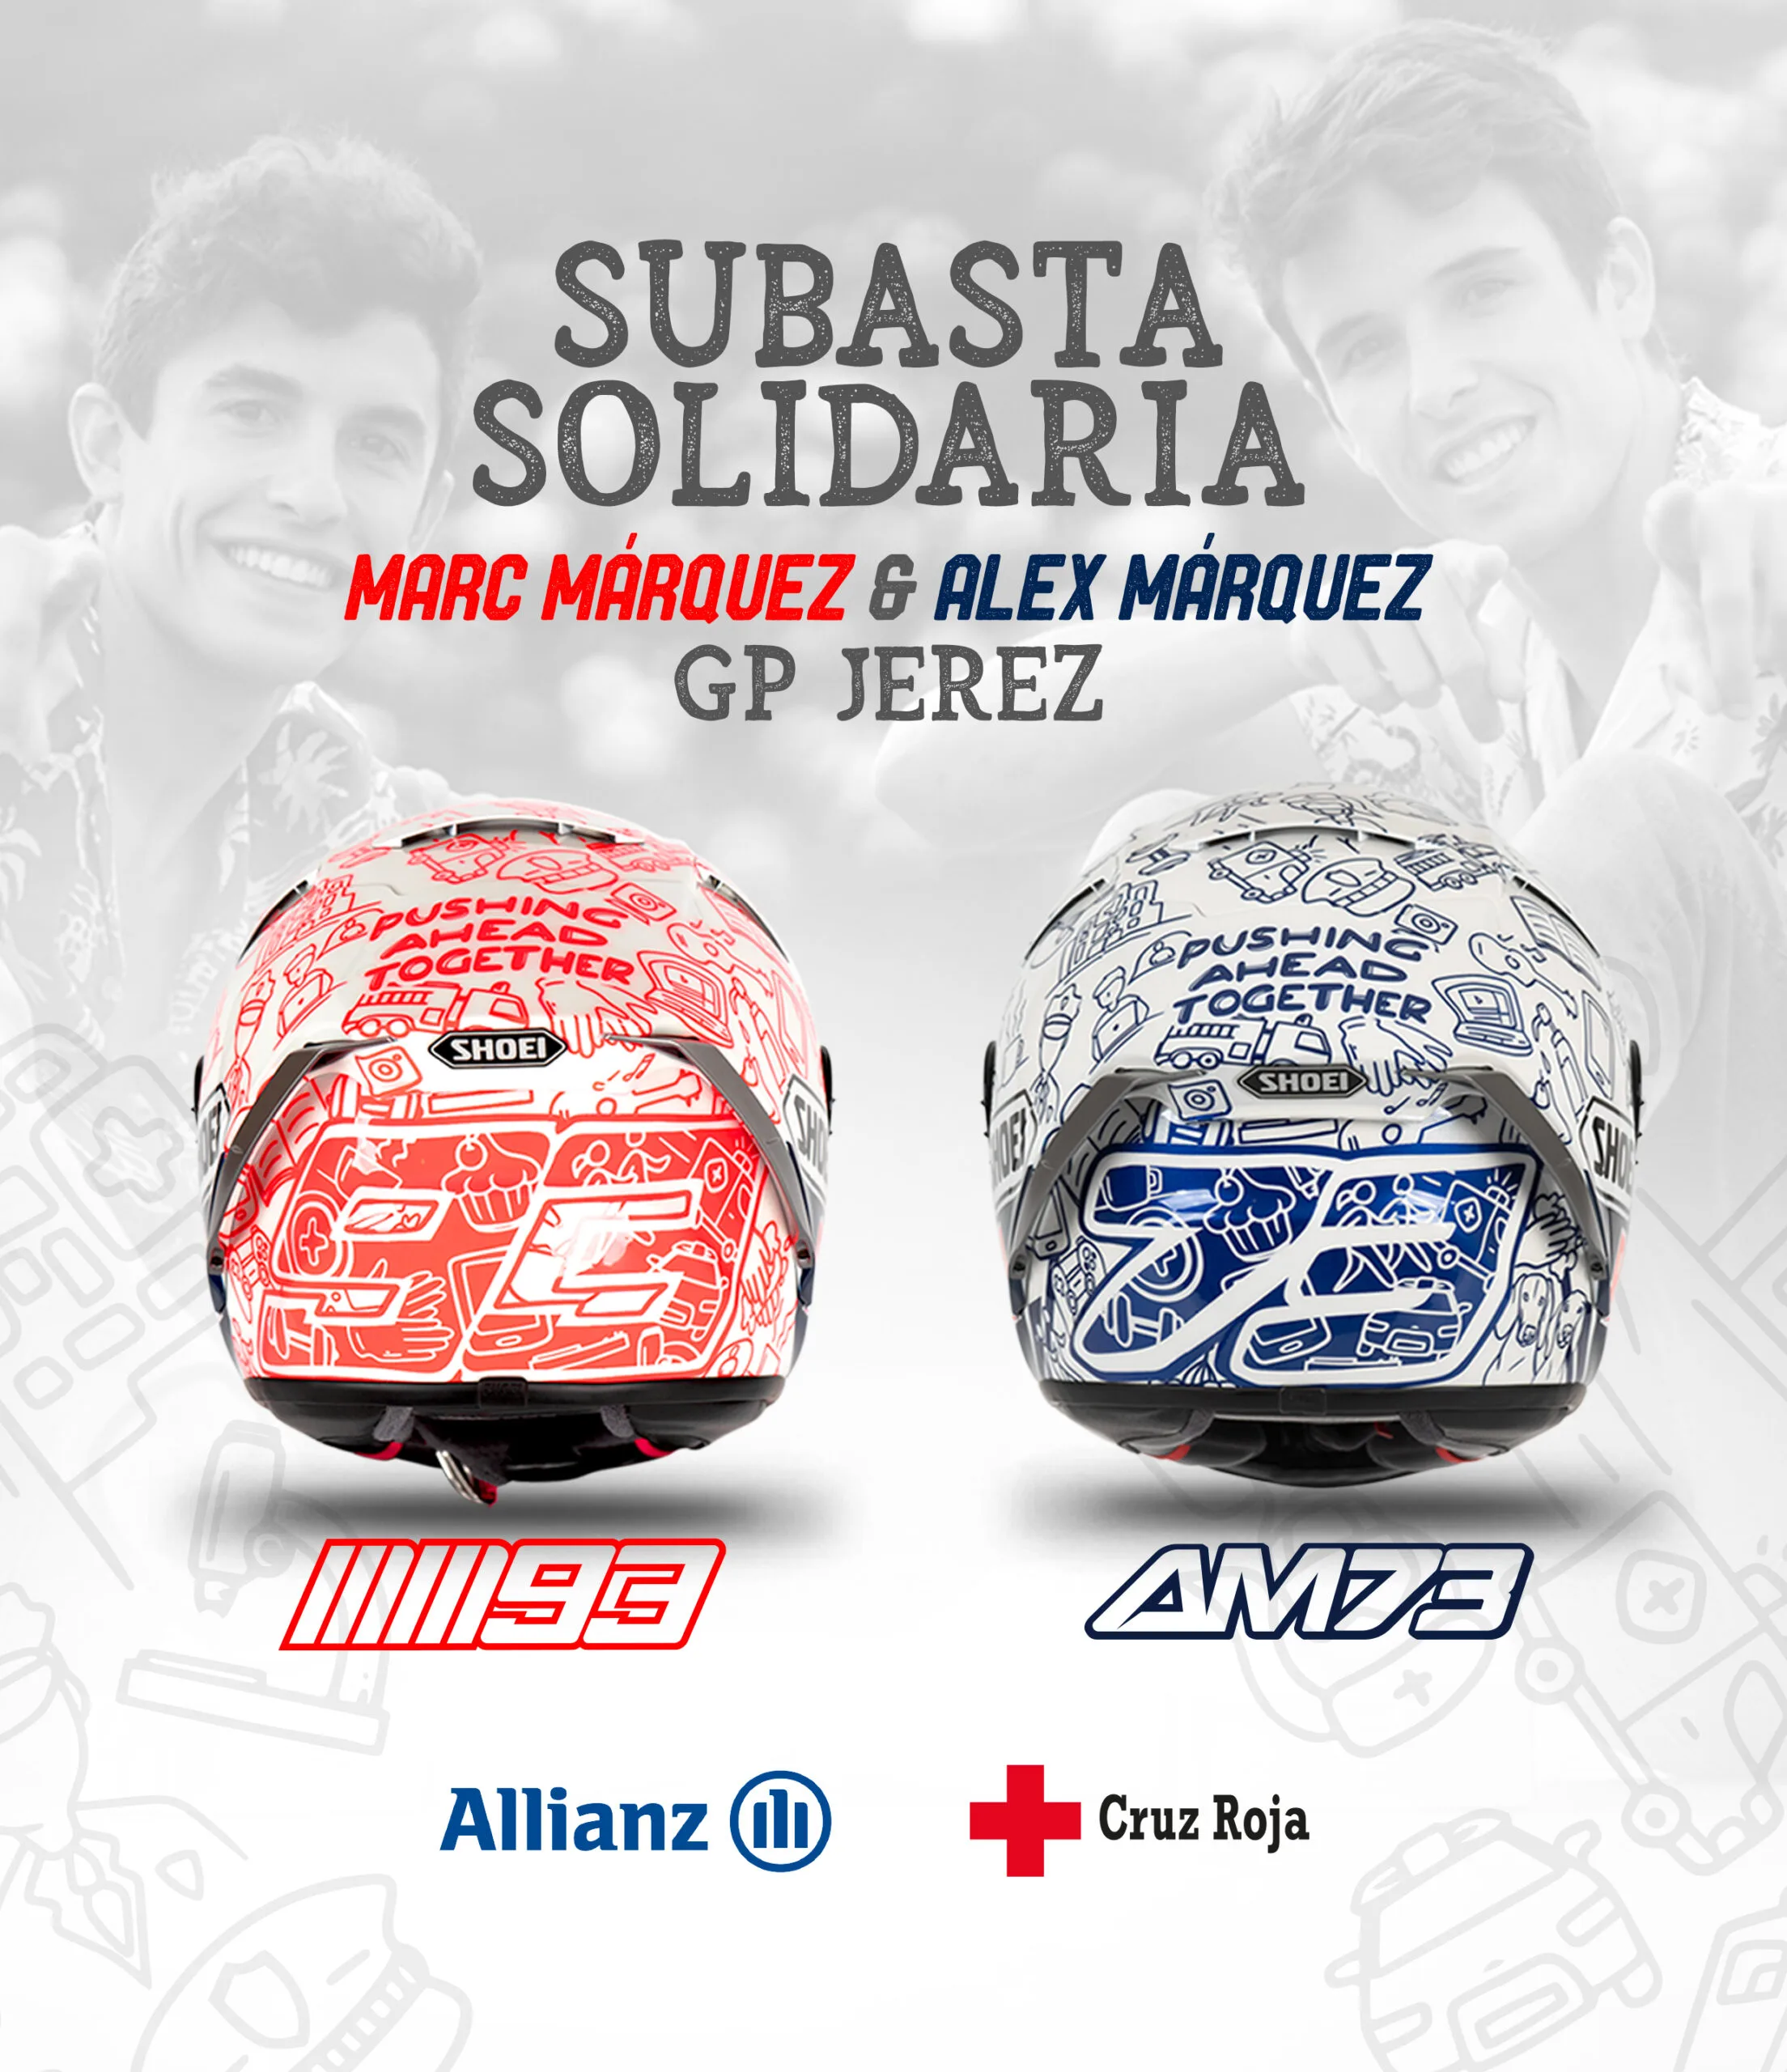 Anh em Marquez đấu giá chiếc mũ đặc biệt ở Jerez để hỗ trợ nạn nhân covid-19 ở Tây Ban Nha